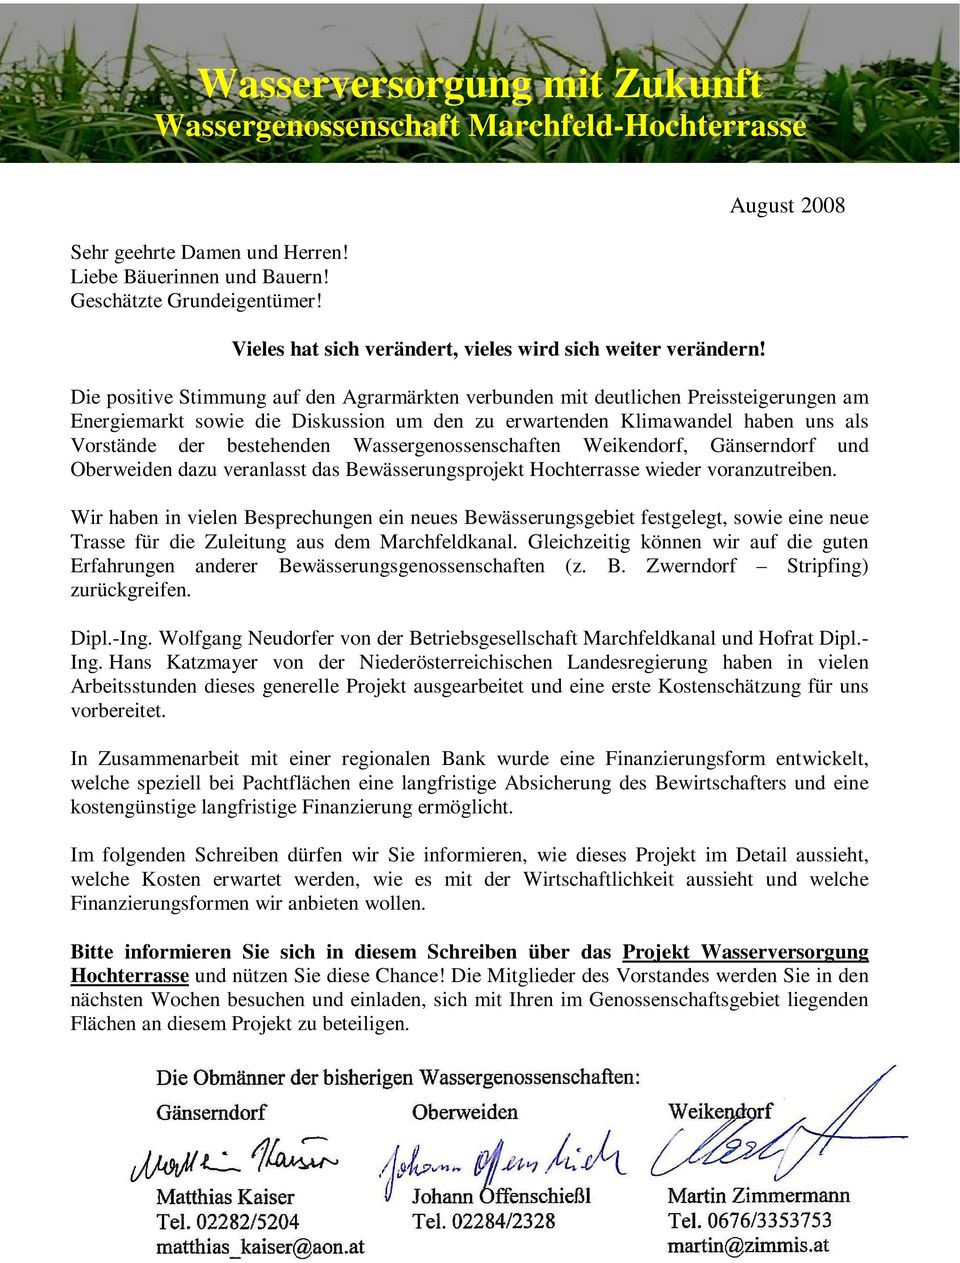 bestehenden Wassergenossenschaften Weikendorf, Gänserndorf und Oberweiden dazu veranlasst das Bewässerungsprojekt Hochterrasse wieder voranzutreiben.